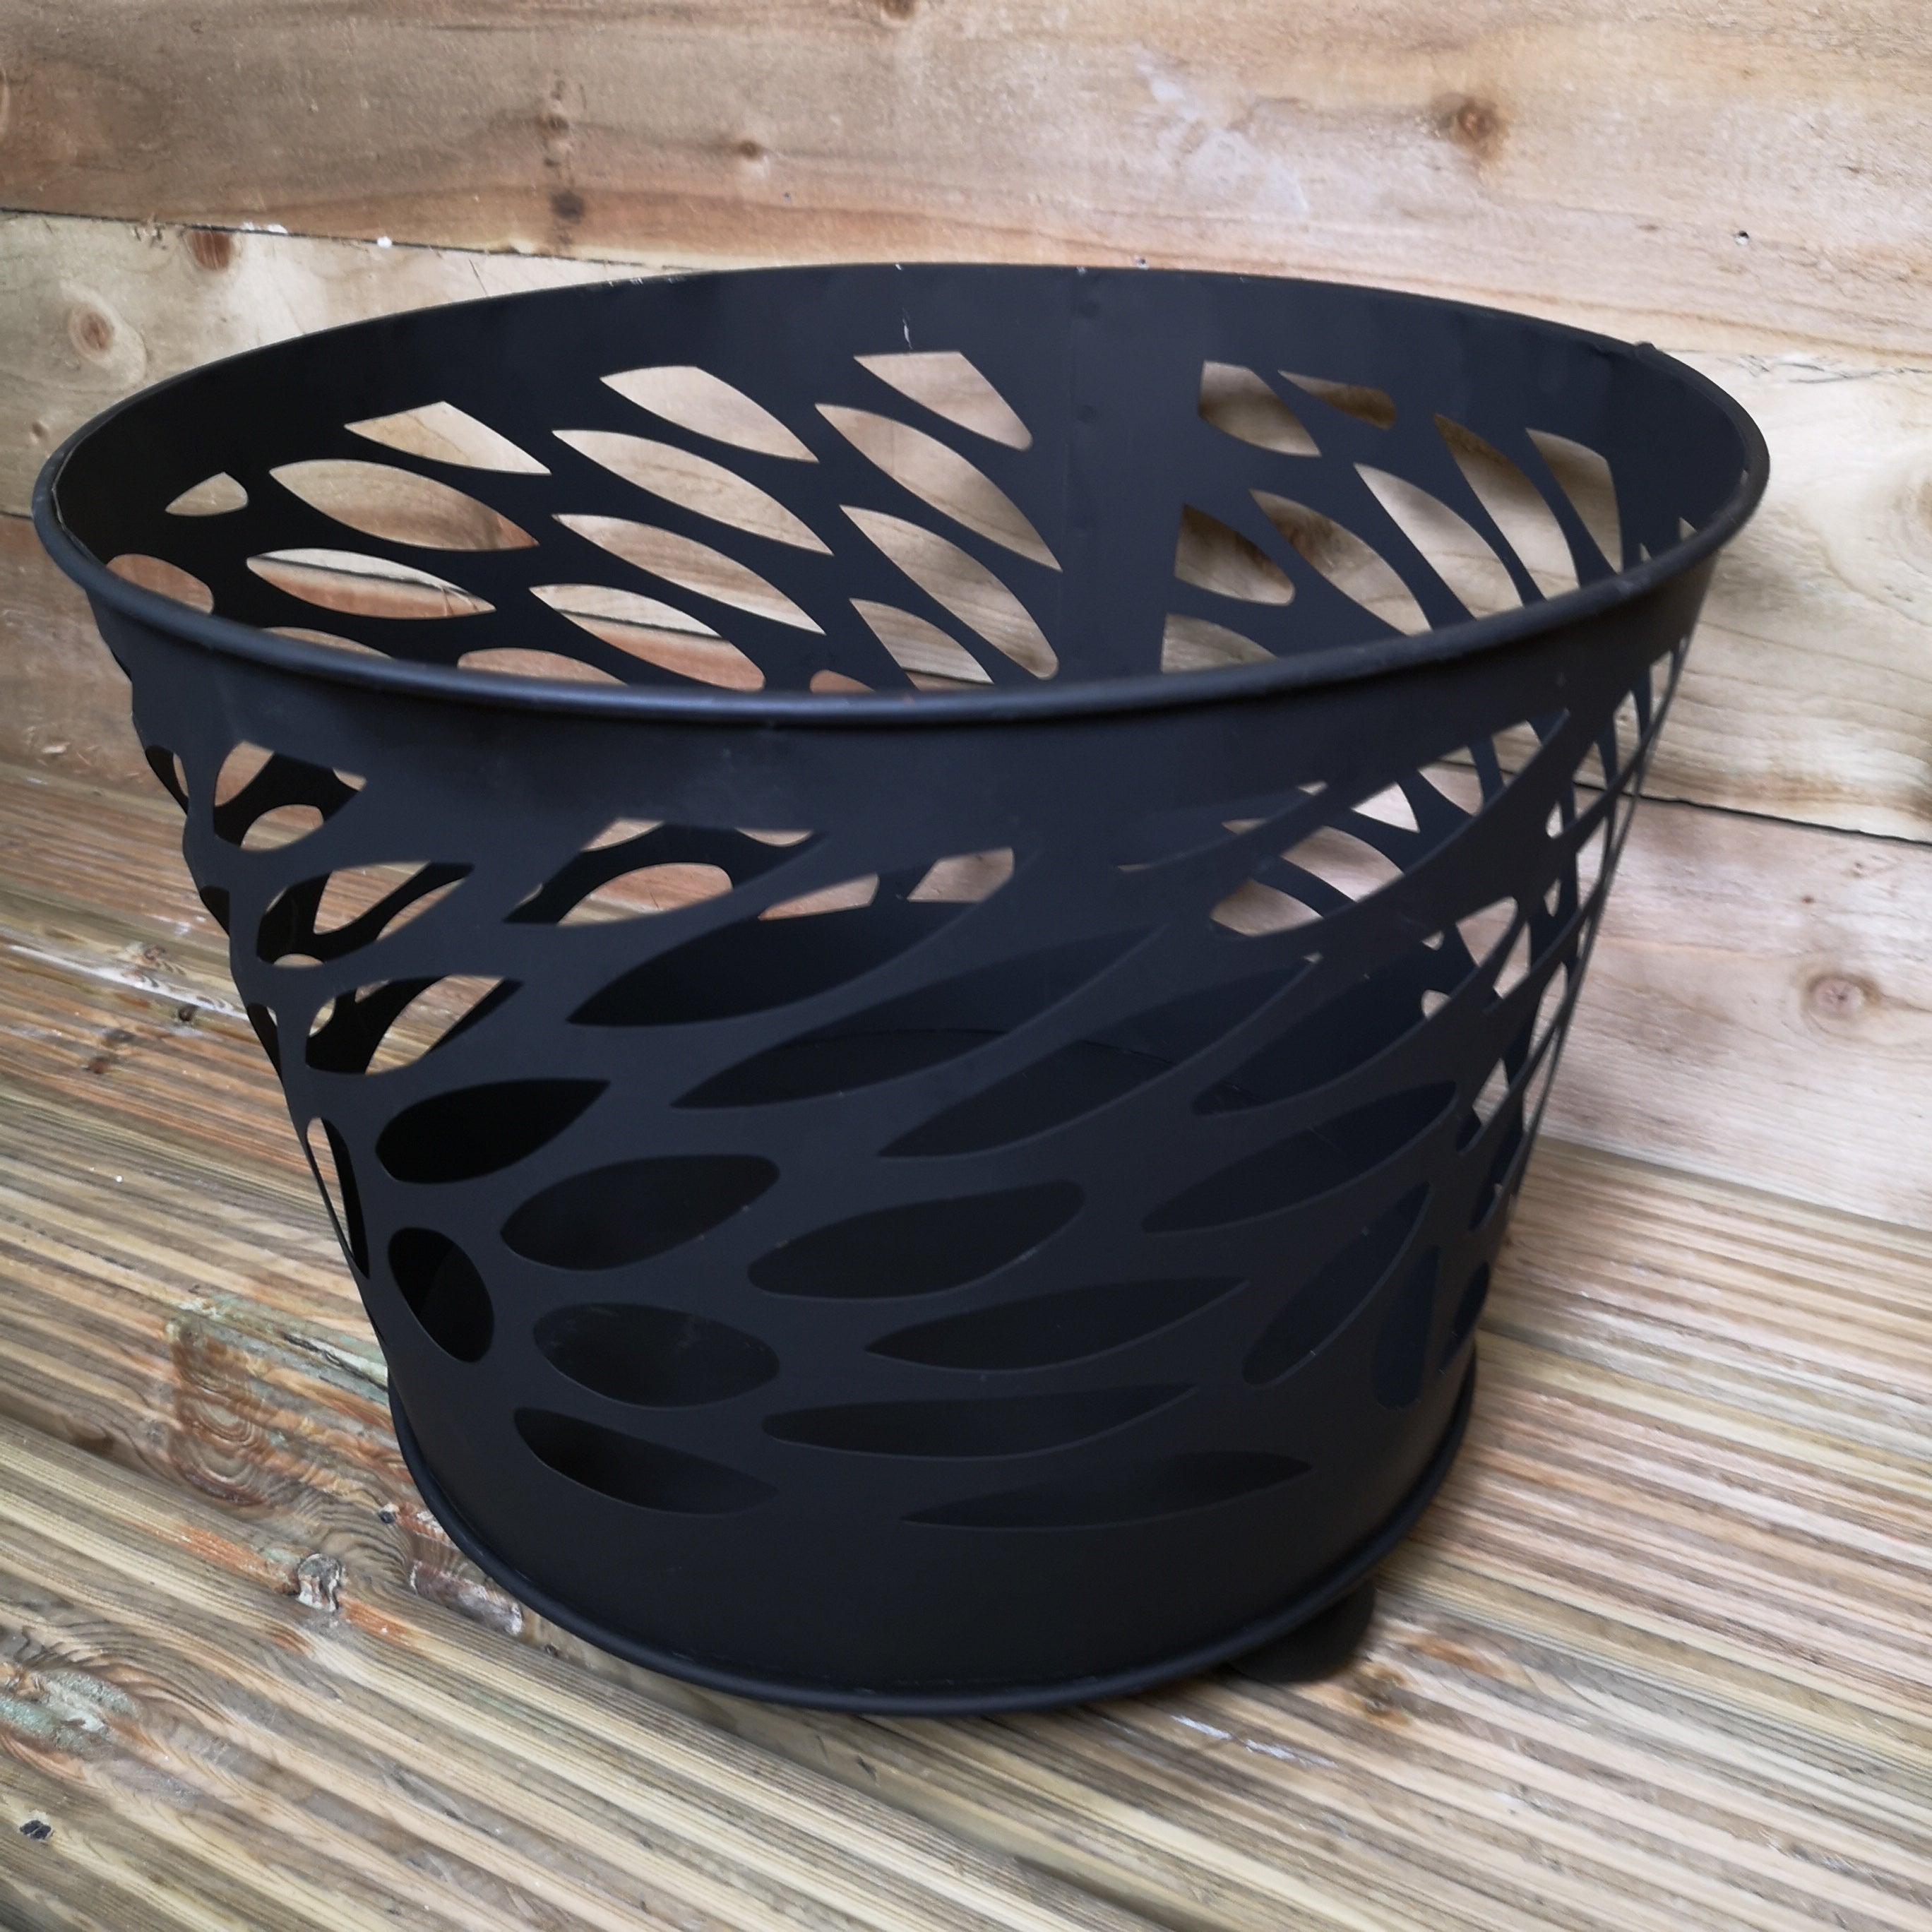 39cm Outdoor Garden Fire Pit / Fire Basket / Wood Burner Bowl in Black